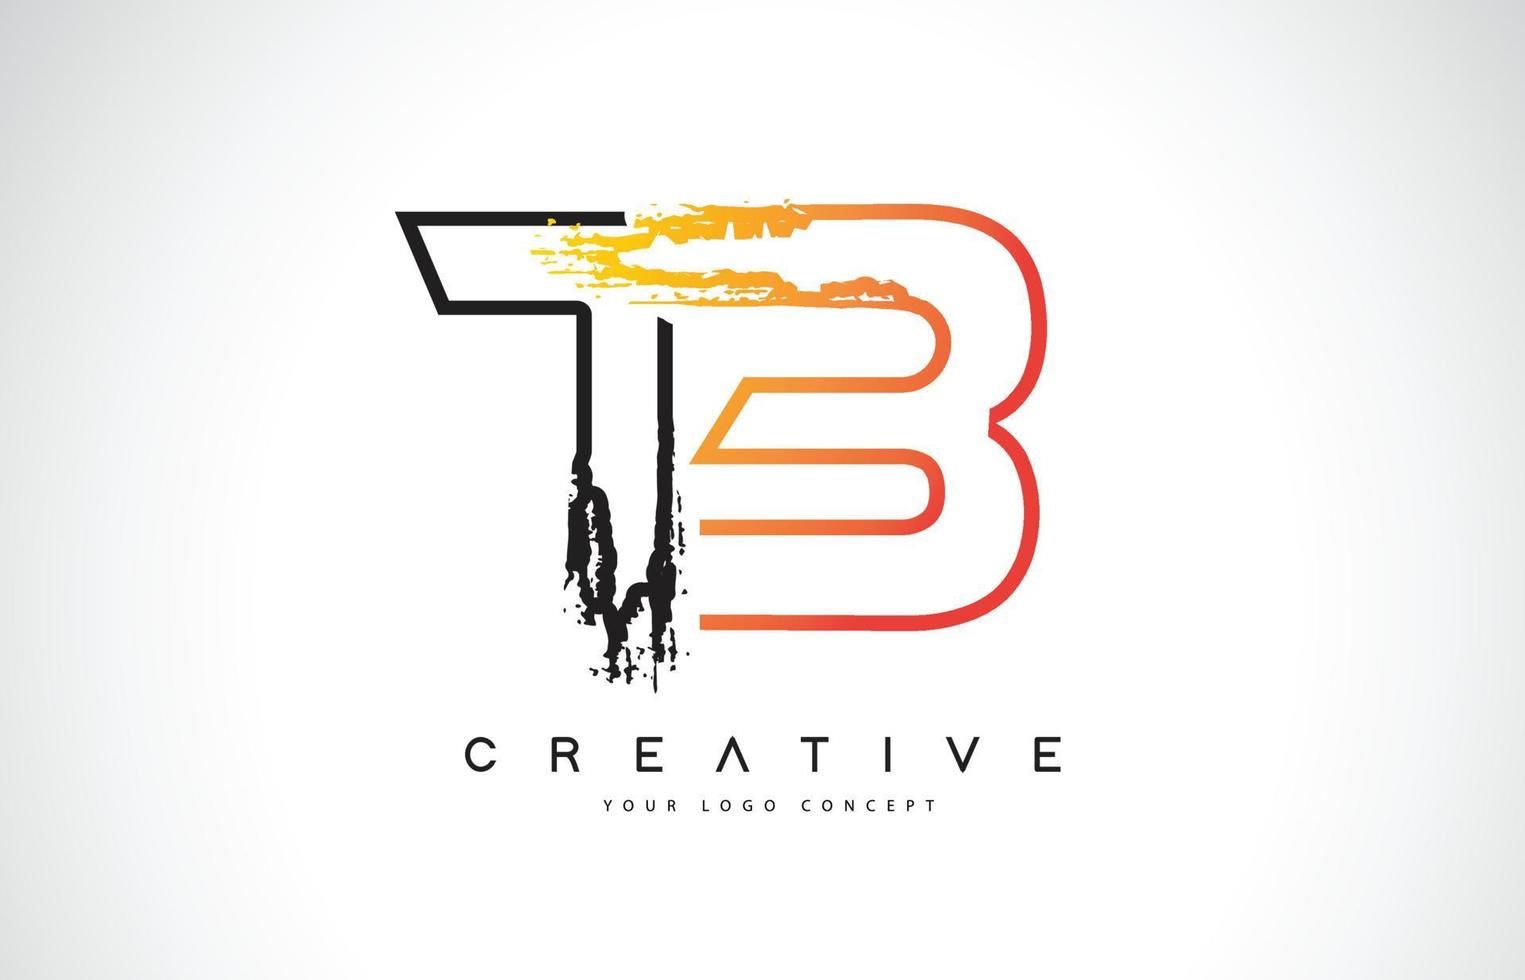 tb kreatives modernes Logo-Design mit orangen und schwarzen Farben. Monogramm-Strich-Buchstaben-Design. vektor